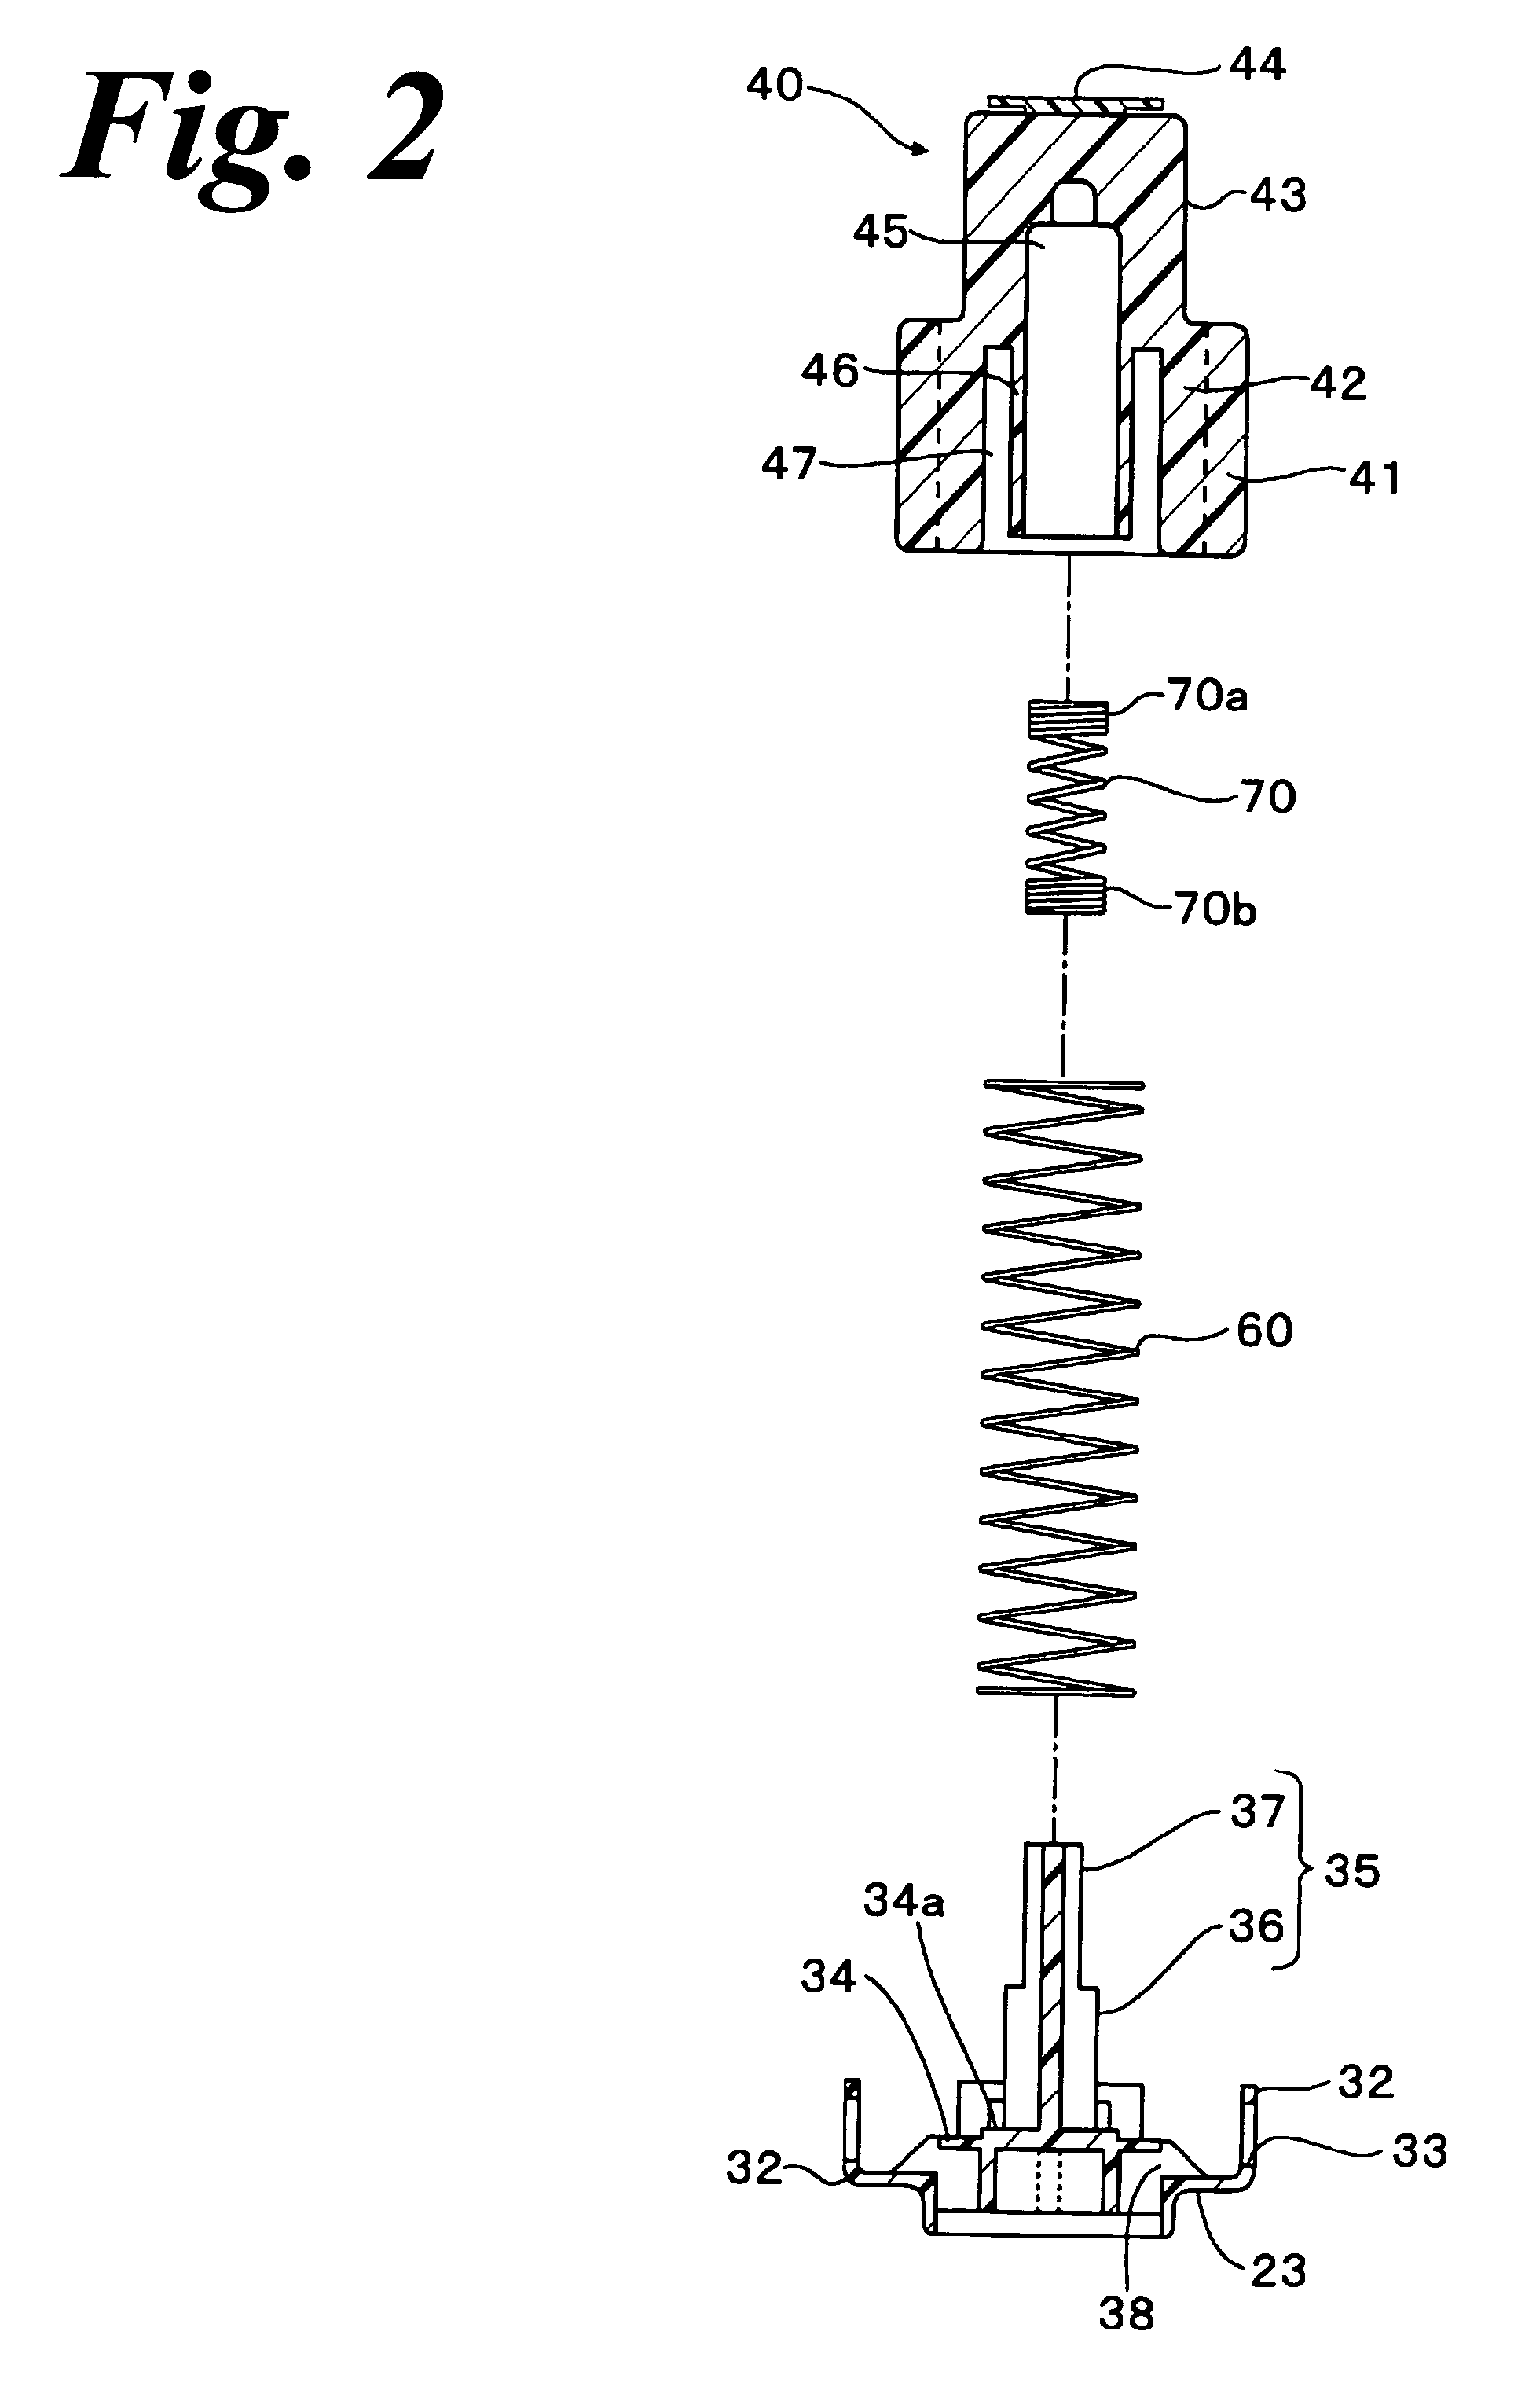 Float valve apparatus